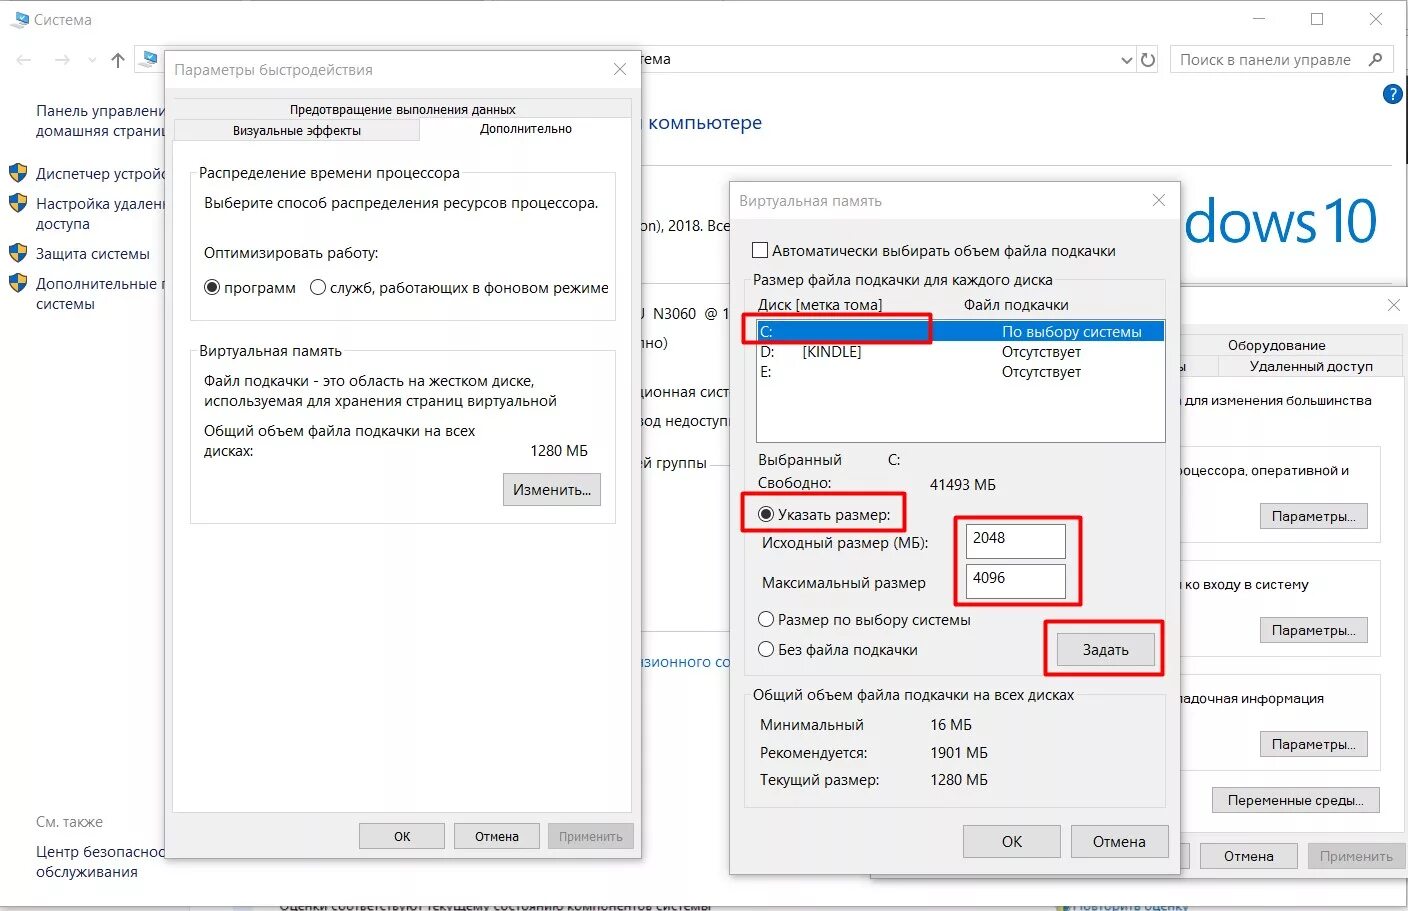 Виртуальная Оперативная память Windows 10. Подкачка оперативной памяти Windows 10. Файла подкачки win 7 8 GB. Увеличение виртуальной памяти Windows 10. Изменение файлов игр